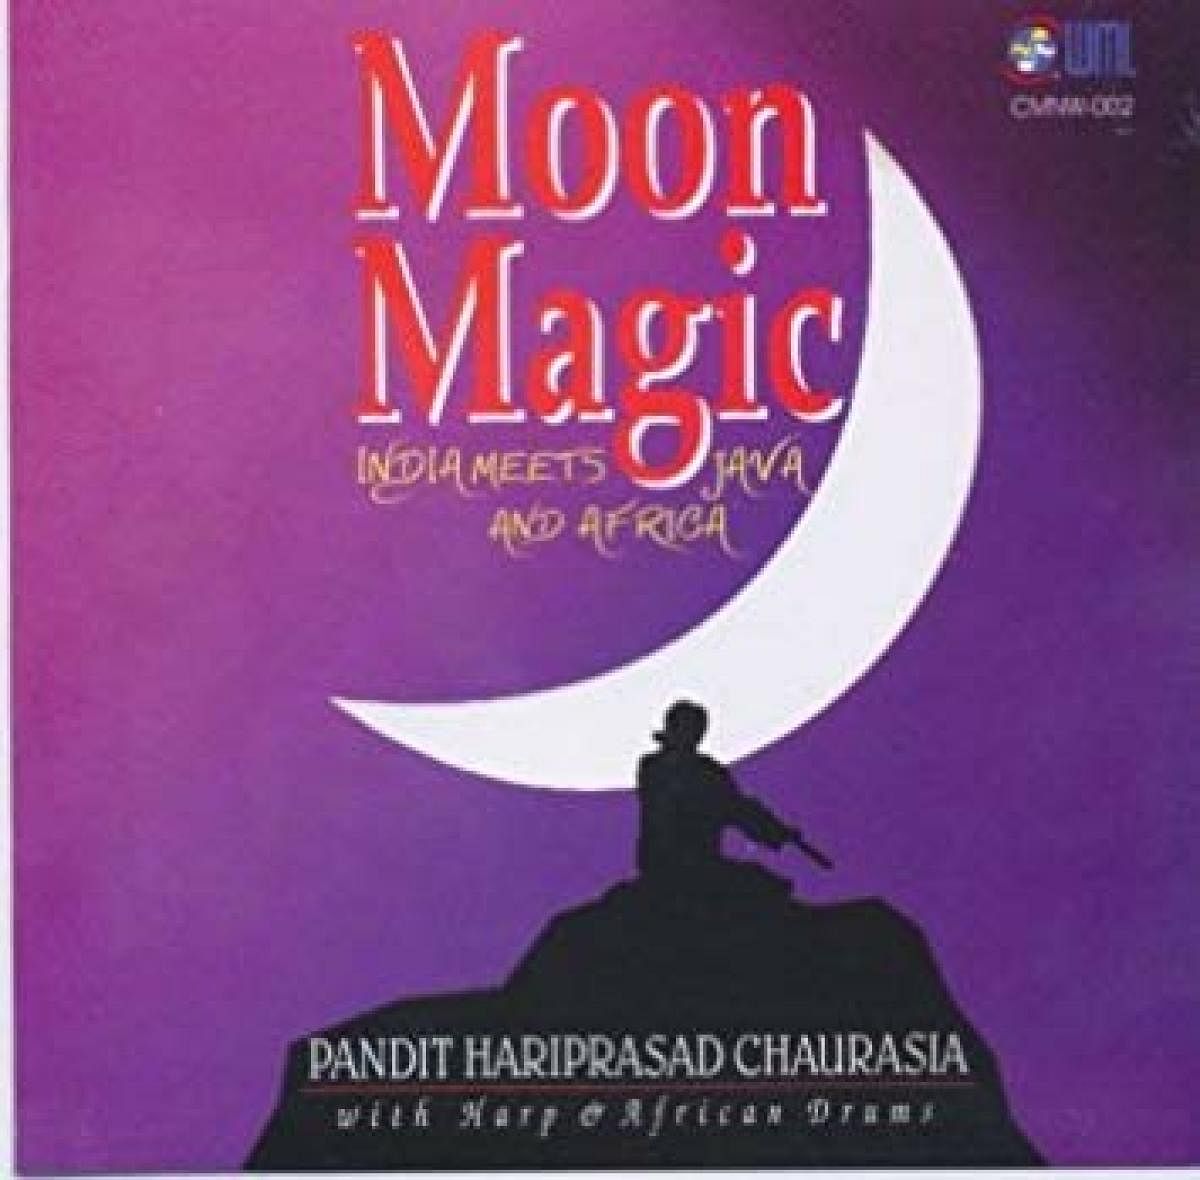 The album cover of 'Moon Magic'